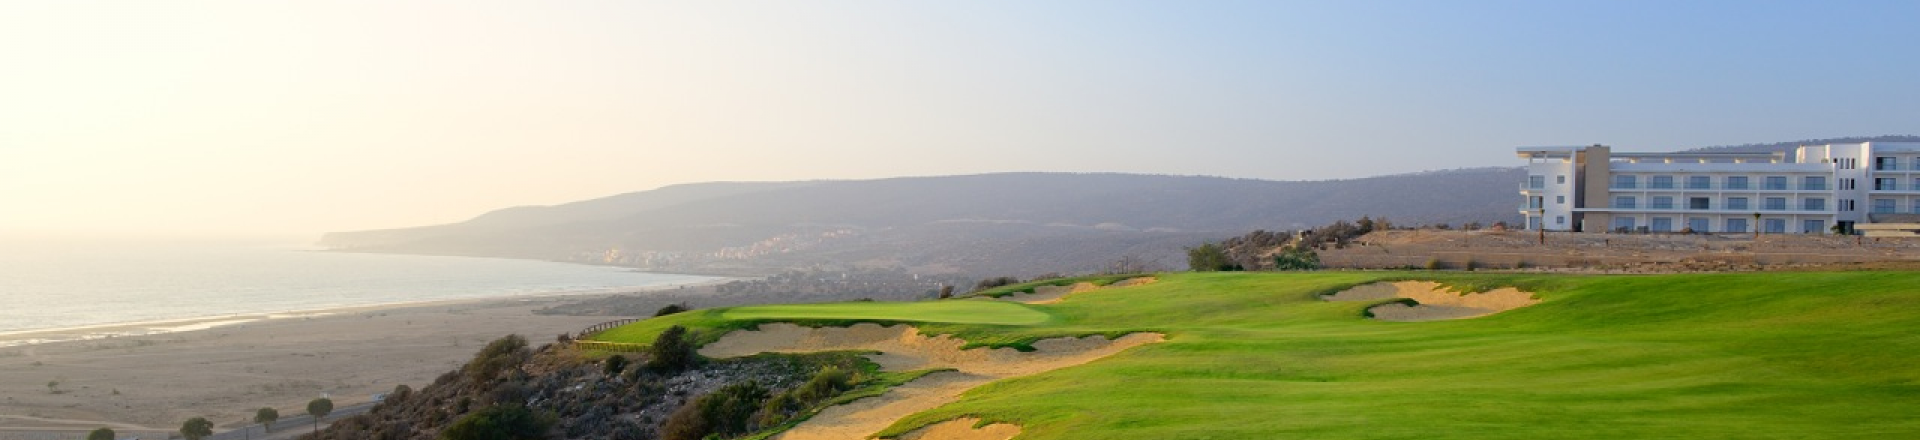 Agadir Golf Course for golf breaks in Morocco